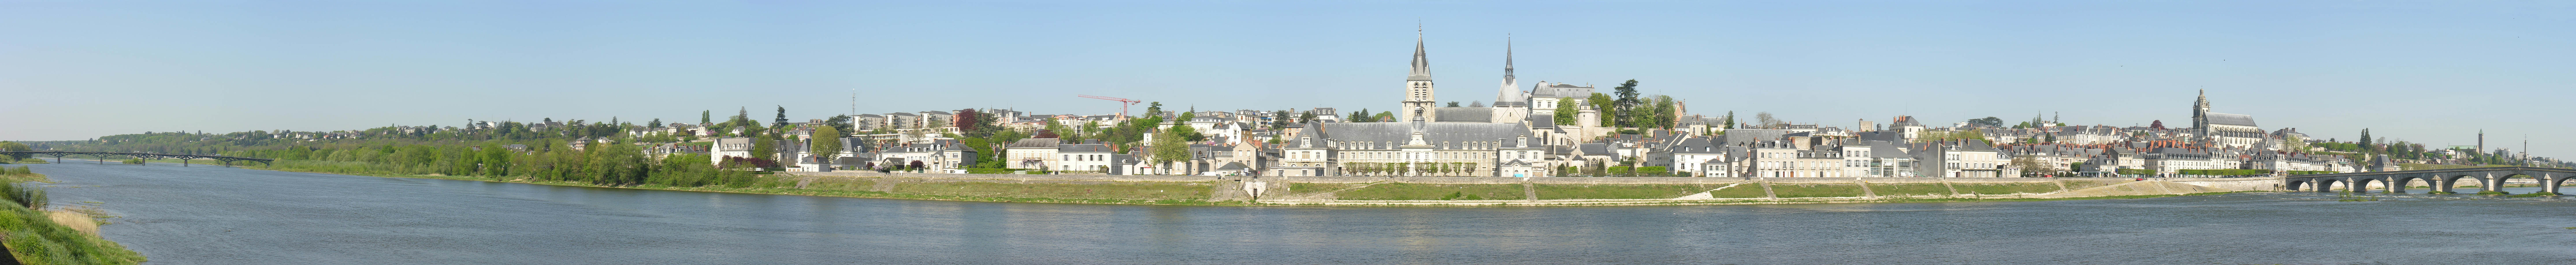 The Loire - Blois - France4.jpg